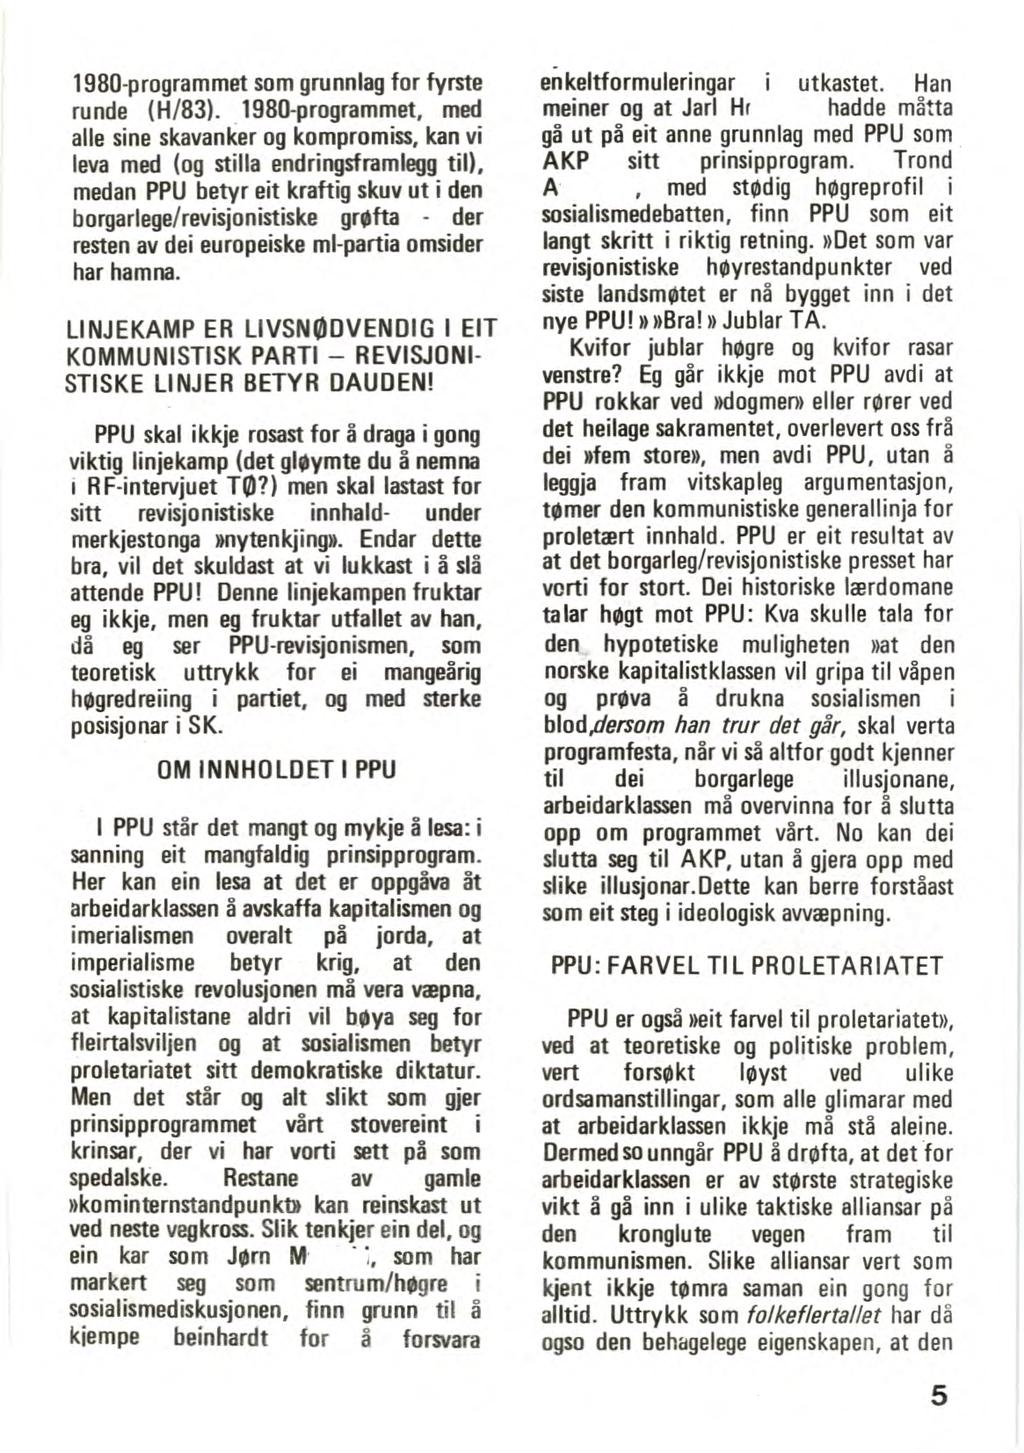 1980-programmet som grunnlag for fyrste runde (H/83).